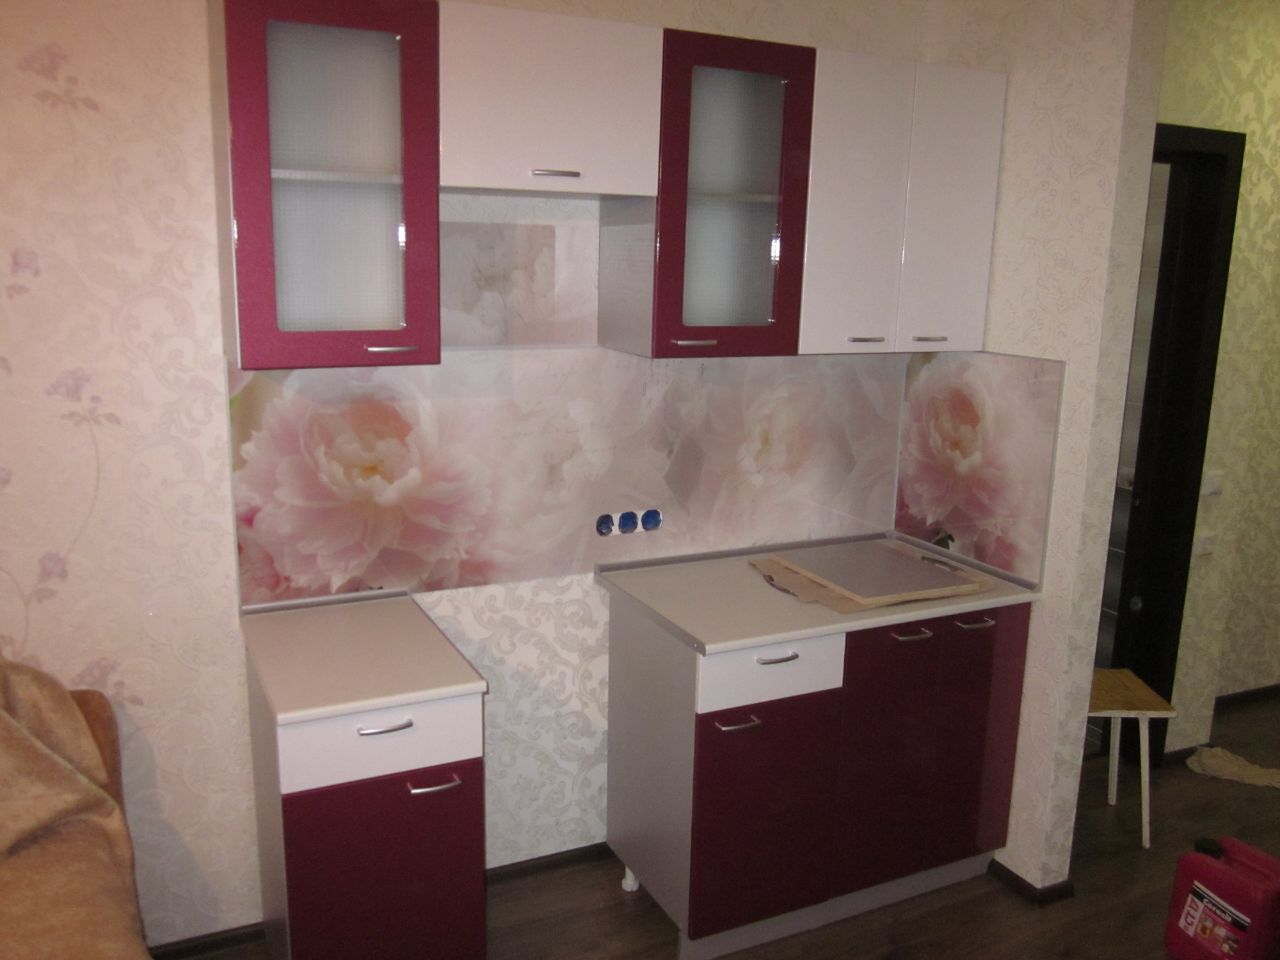 Фото. Небольшая кухня. Цена 35 тыс. рублей 